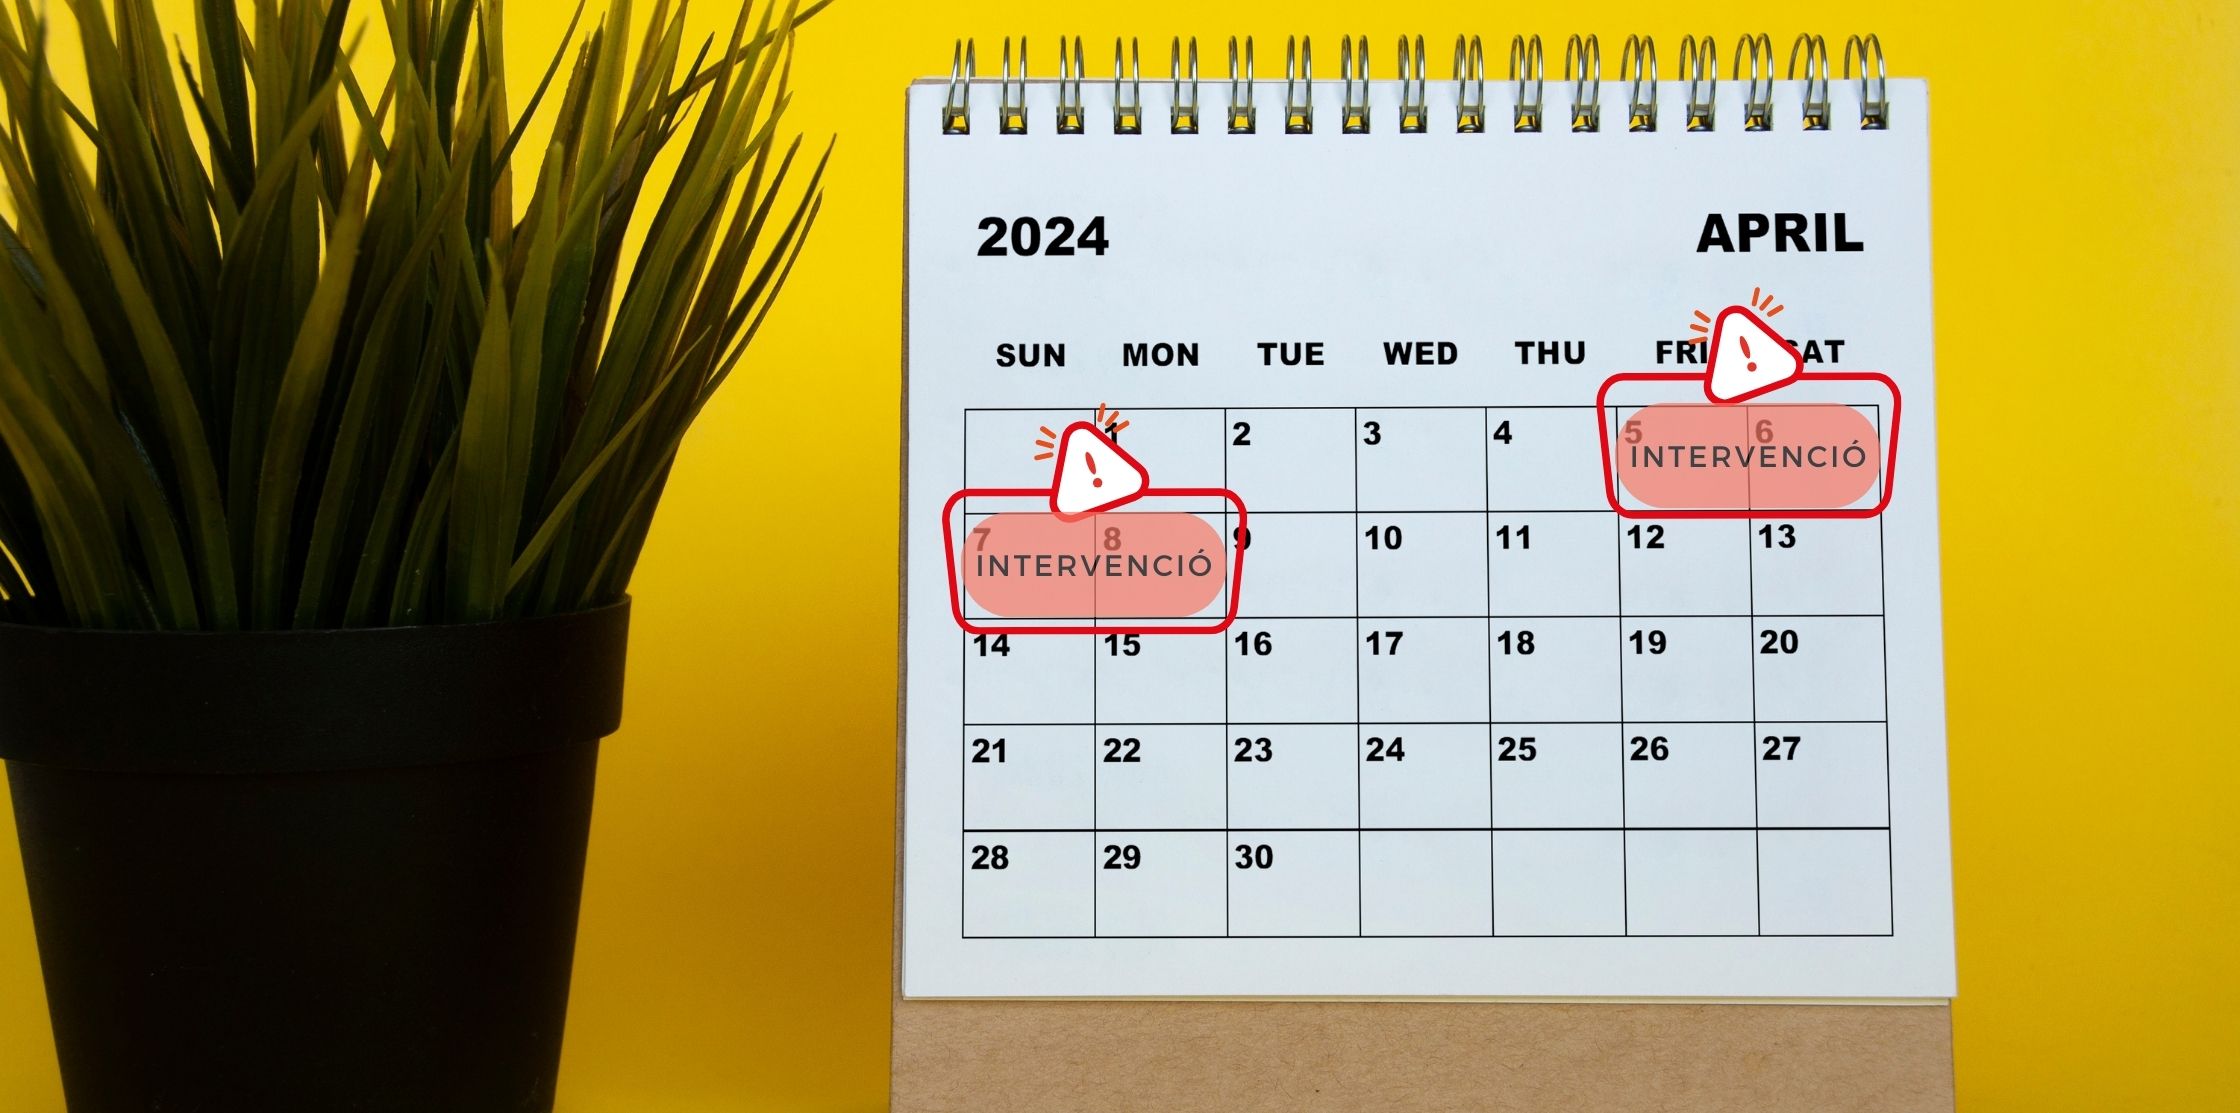 Calendario del mese di aprile 2024 dove si segnala l'intervento che comporterà il taglio di non pochi servizi AOC, nello specifico dal 5 all'8 aprile.